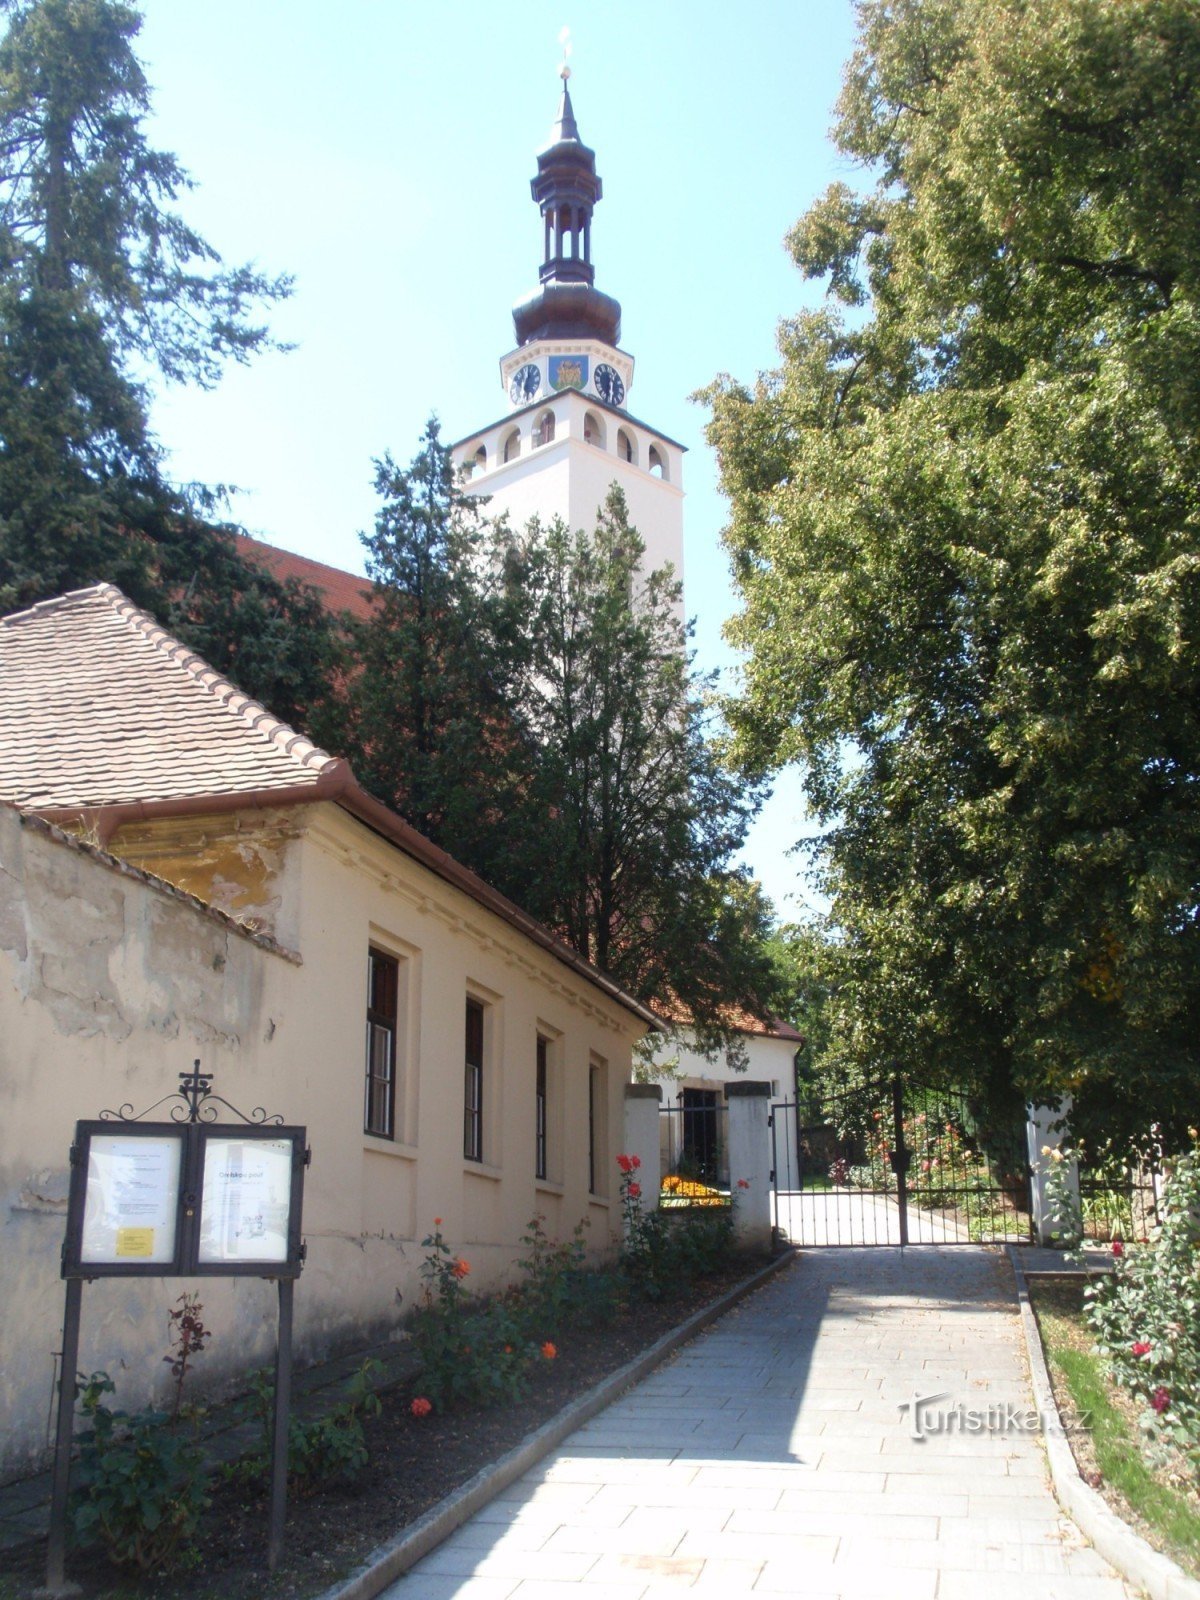 Chiesa dell'Assunzione della Vergine Maria a Blučín